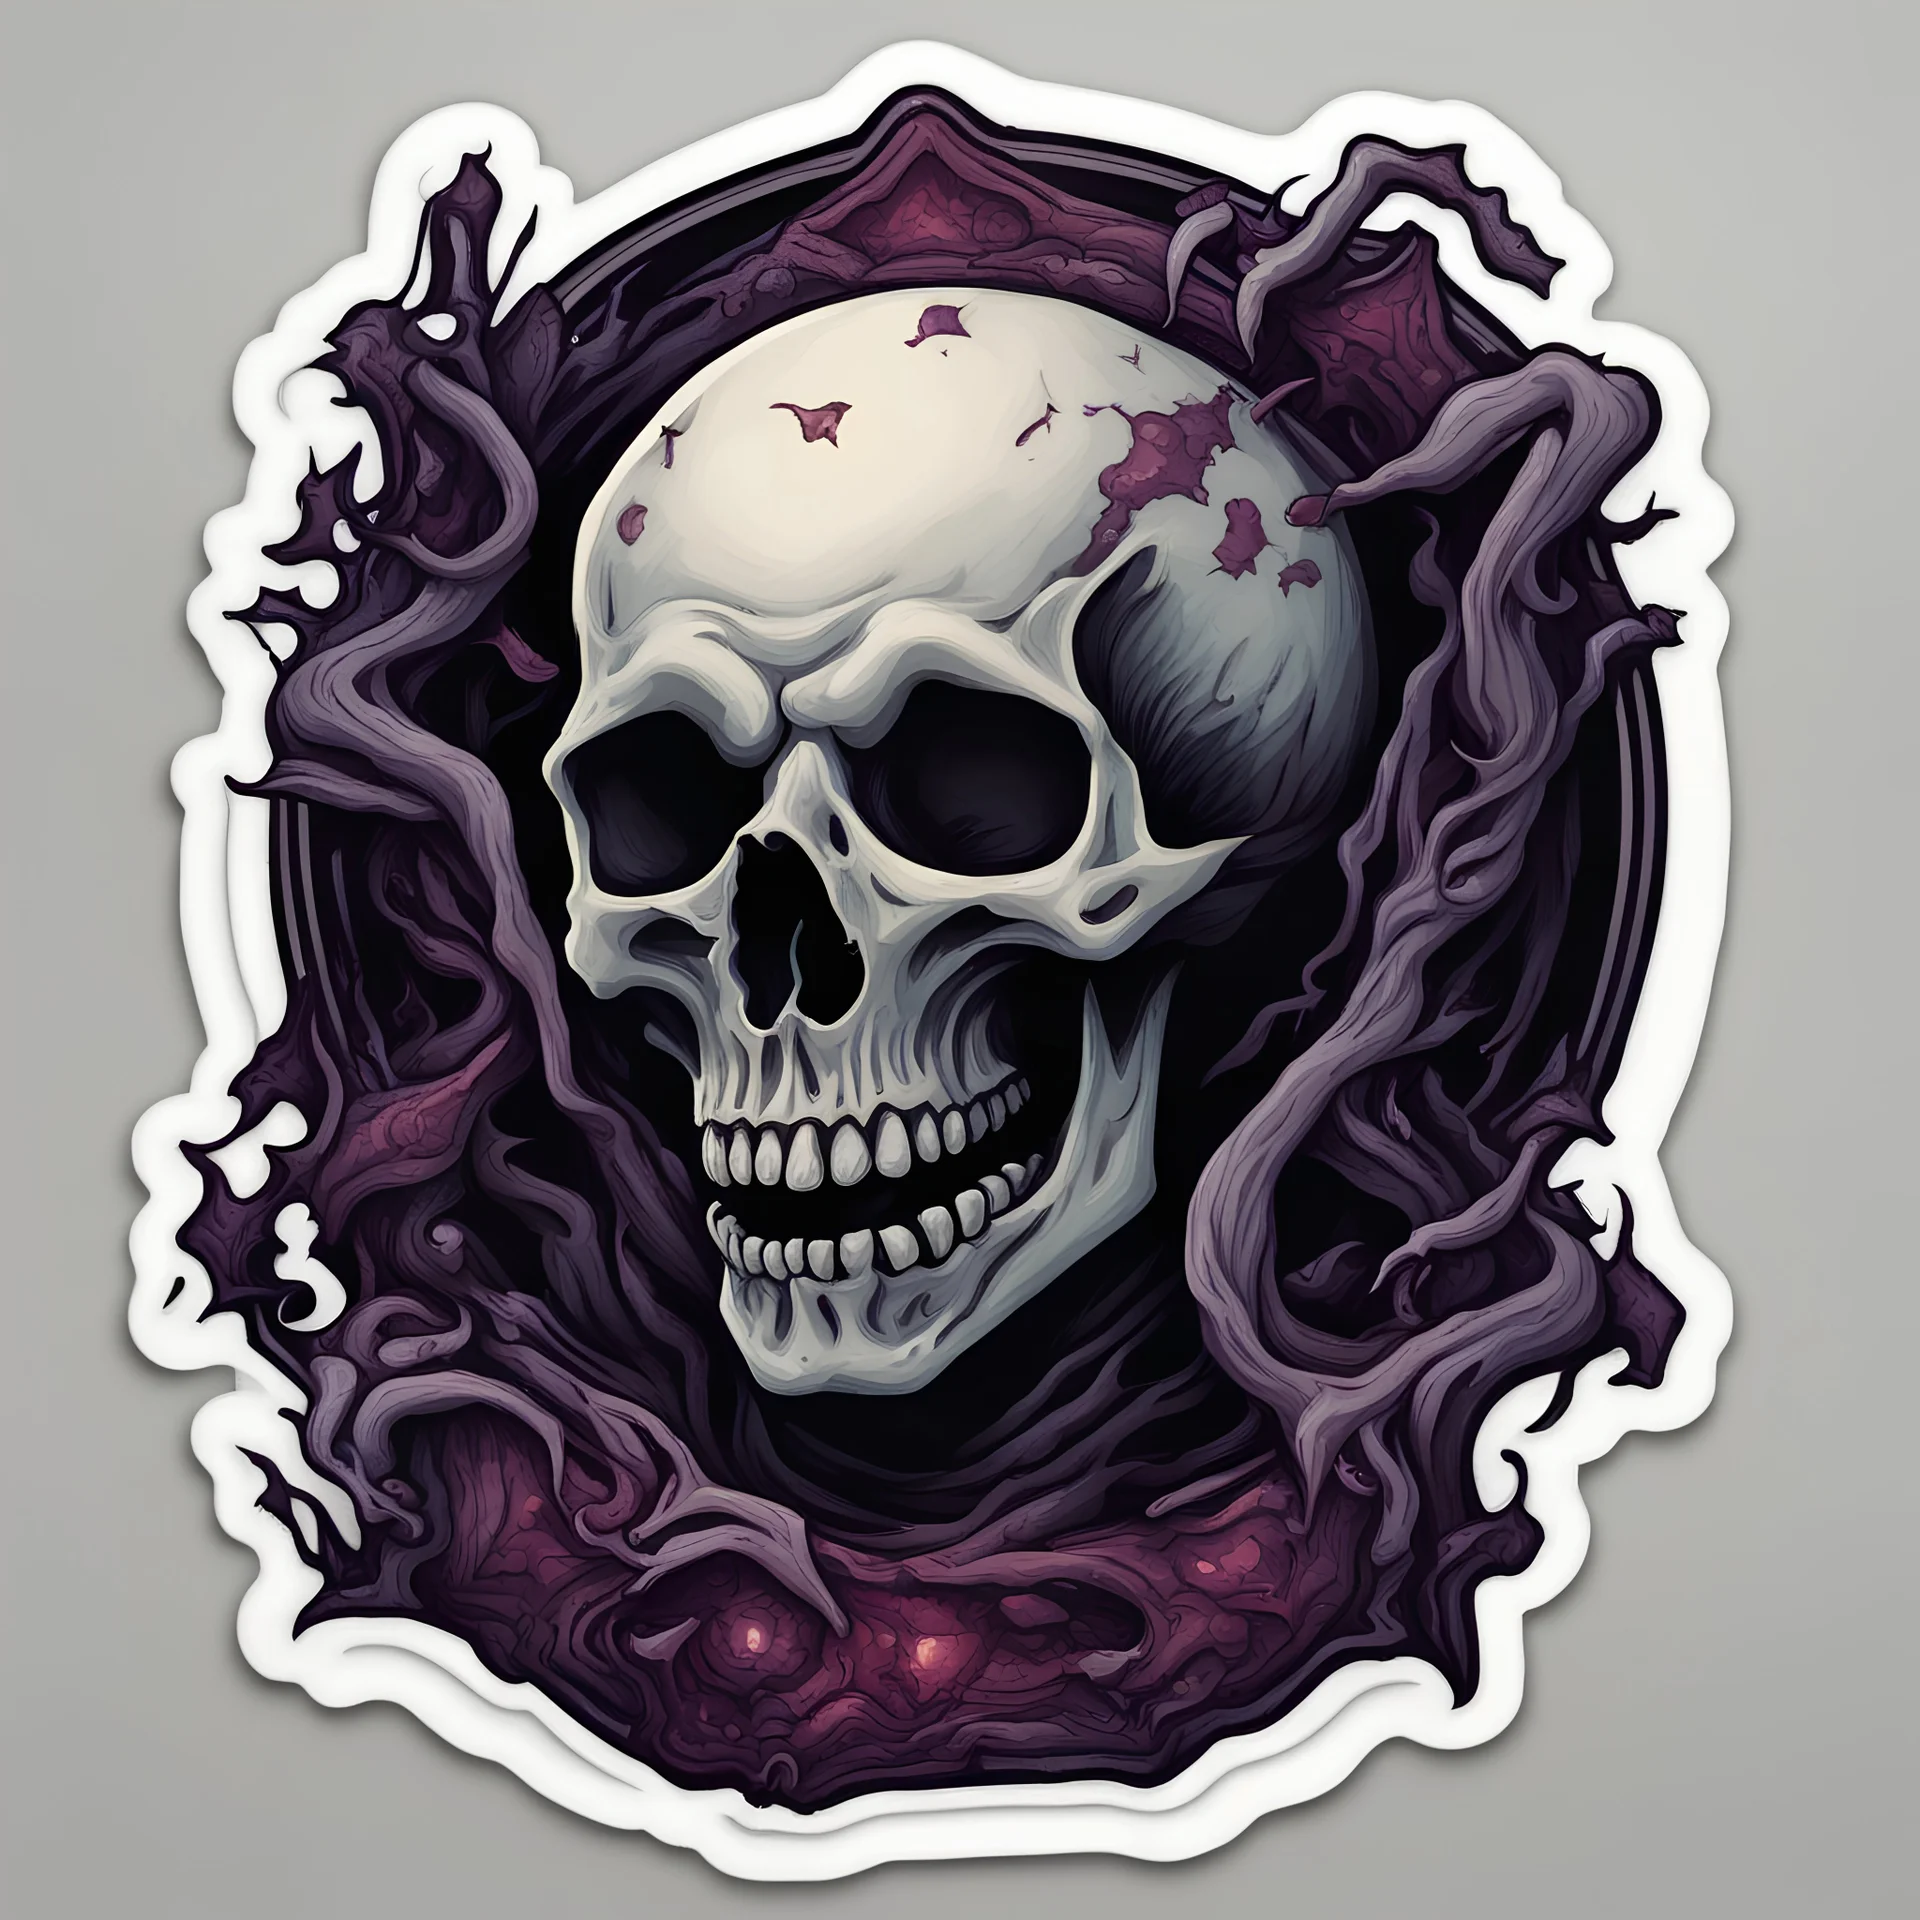 Ravening Corruption in sticker macabre art style